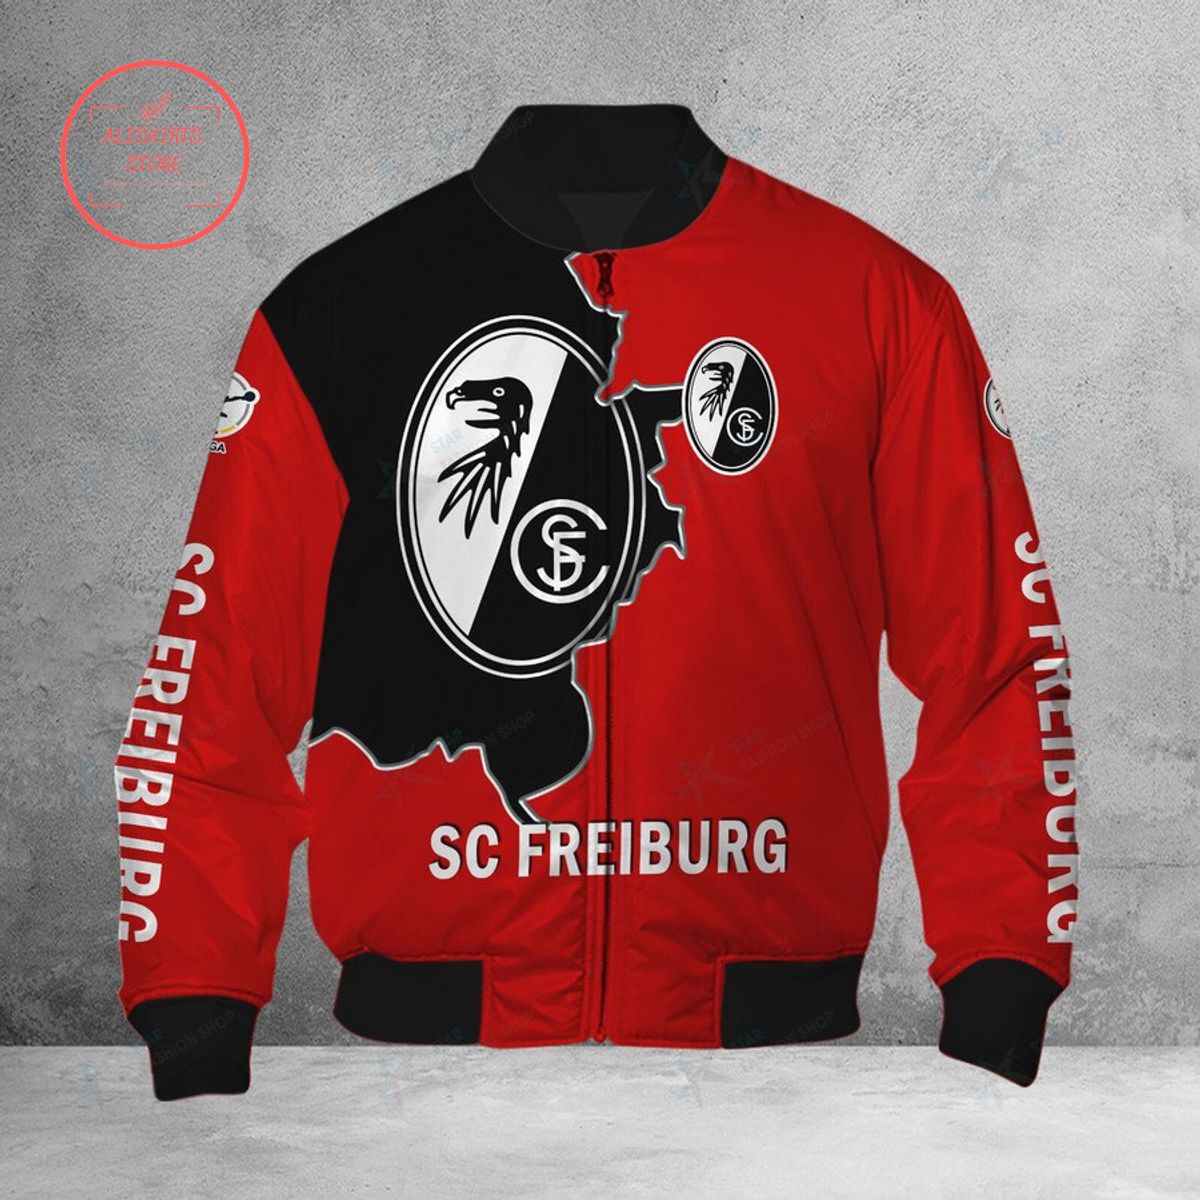 SC Freiburg Bomber Jacket